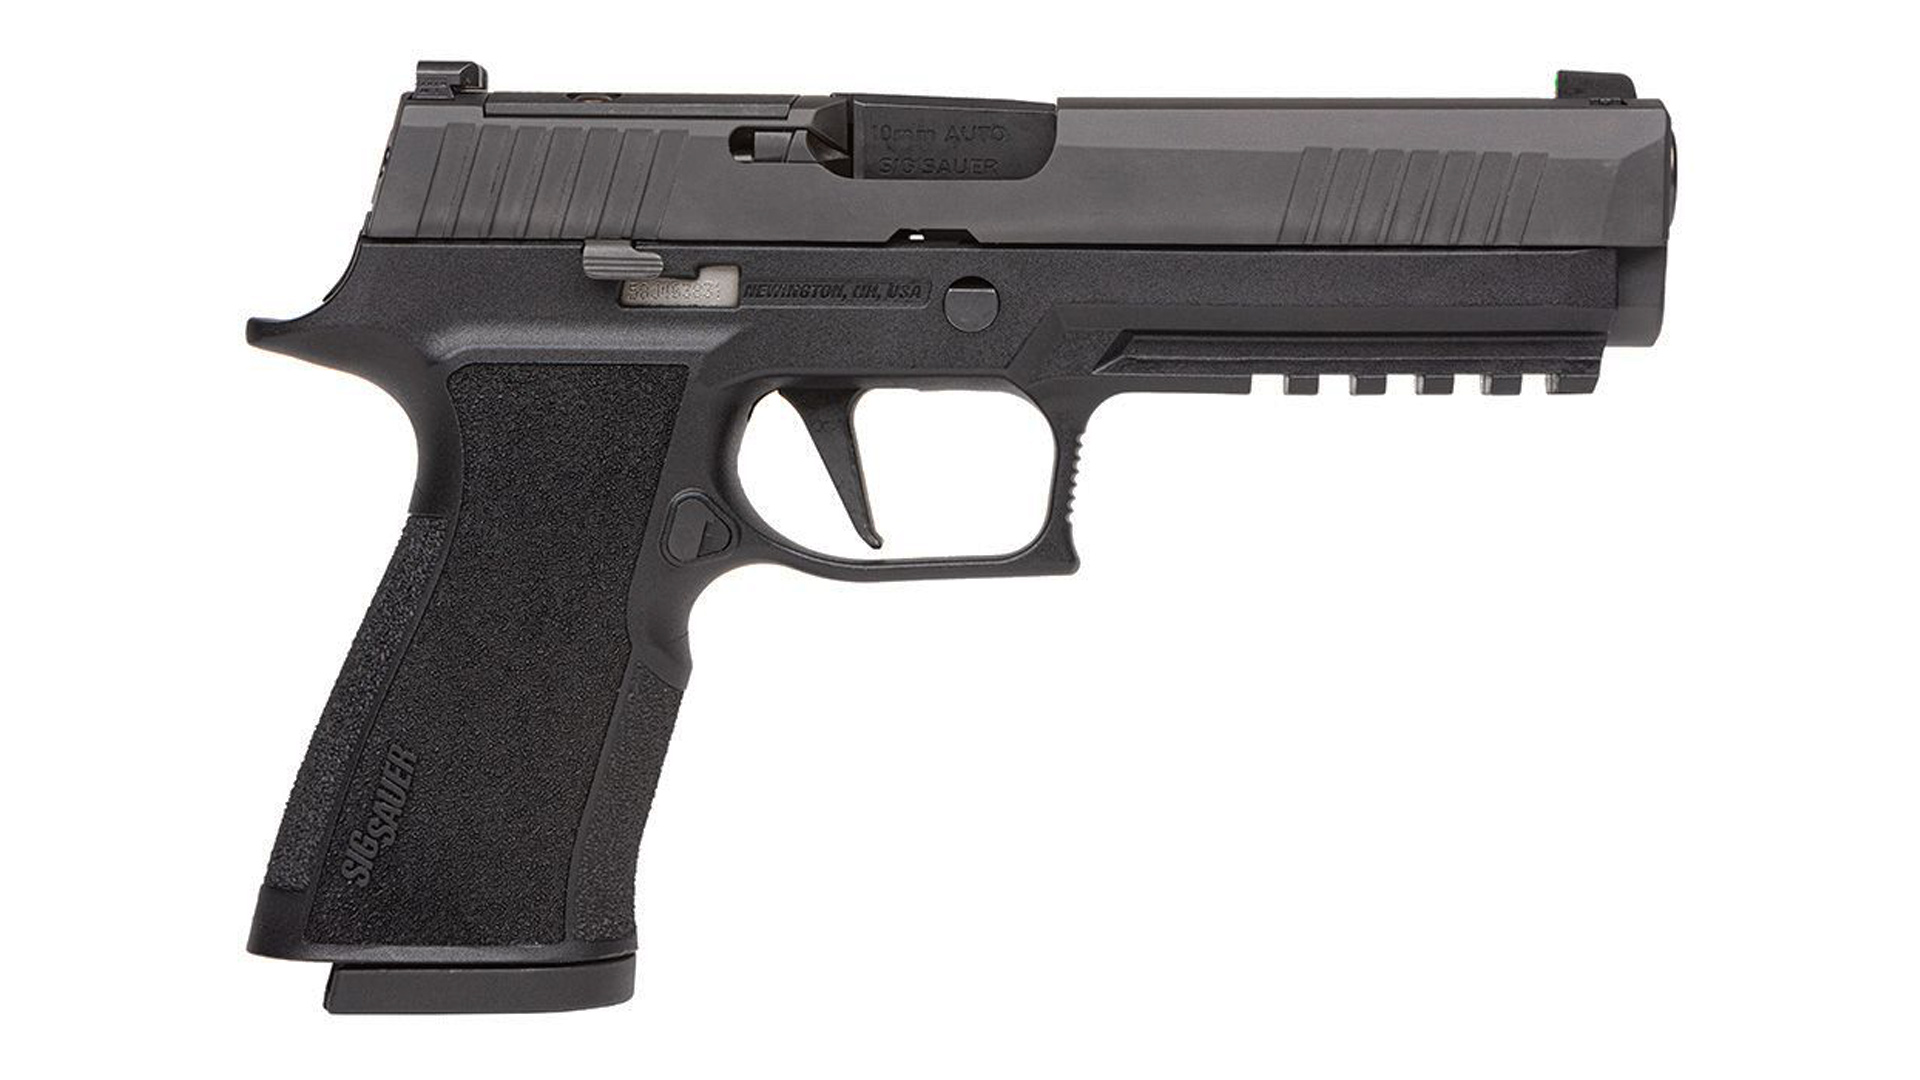 SIG Sauer 10mm pistol